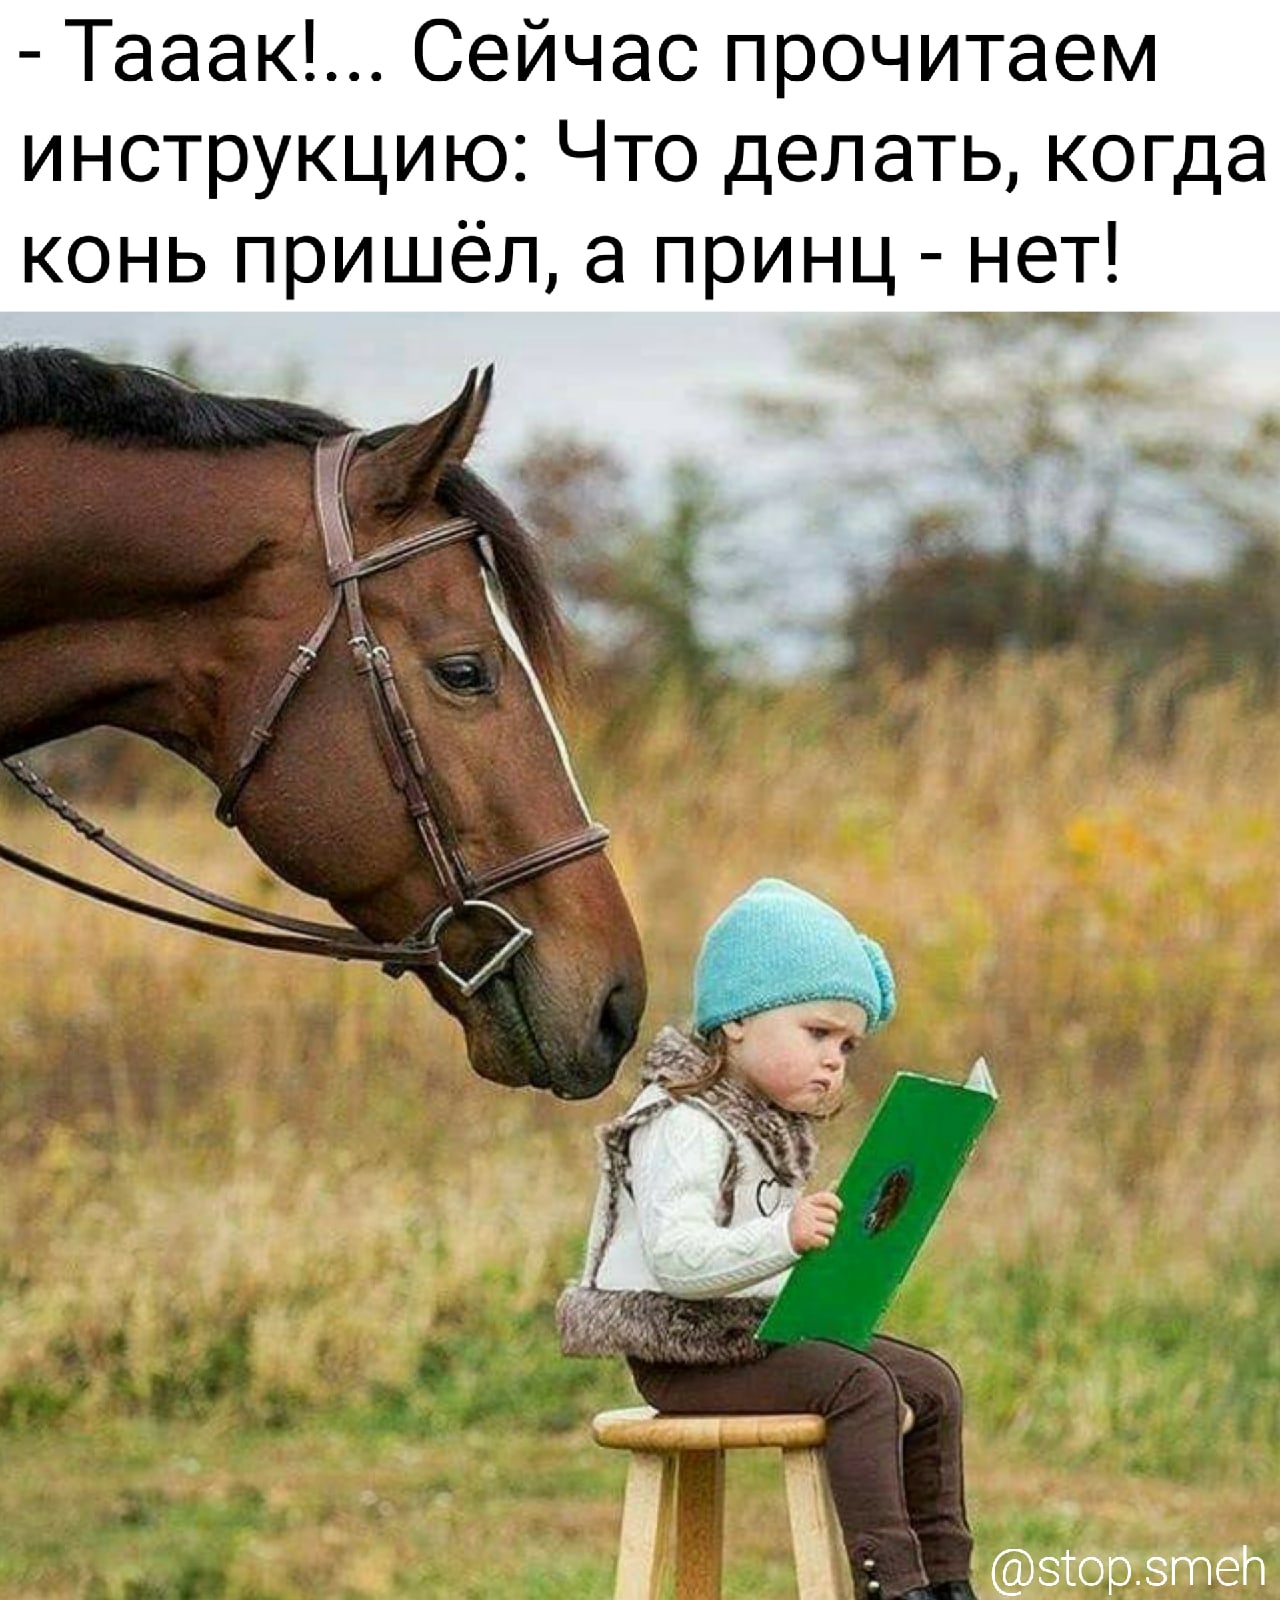 Оставаться на коне. Лошадь для детей. Фотосессия с лошадьми дети. Маленькие дети на лошади. Детская фотосессия с лошадкой.